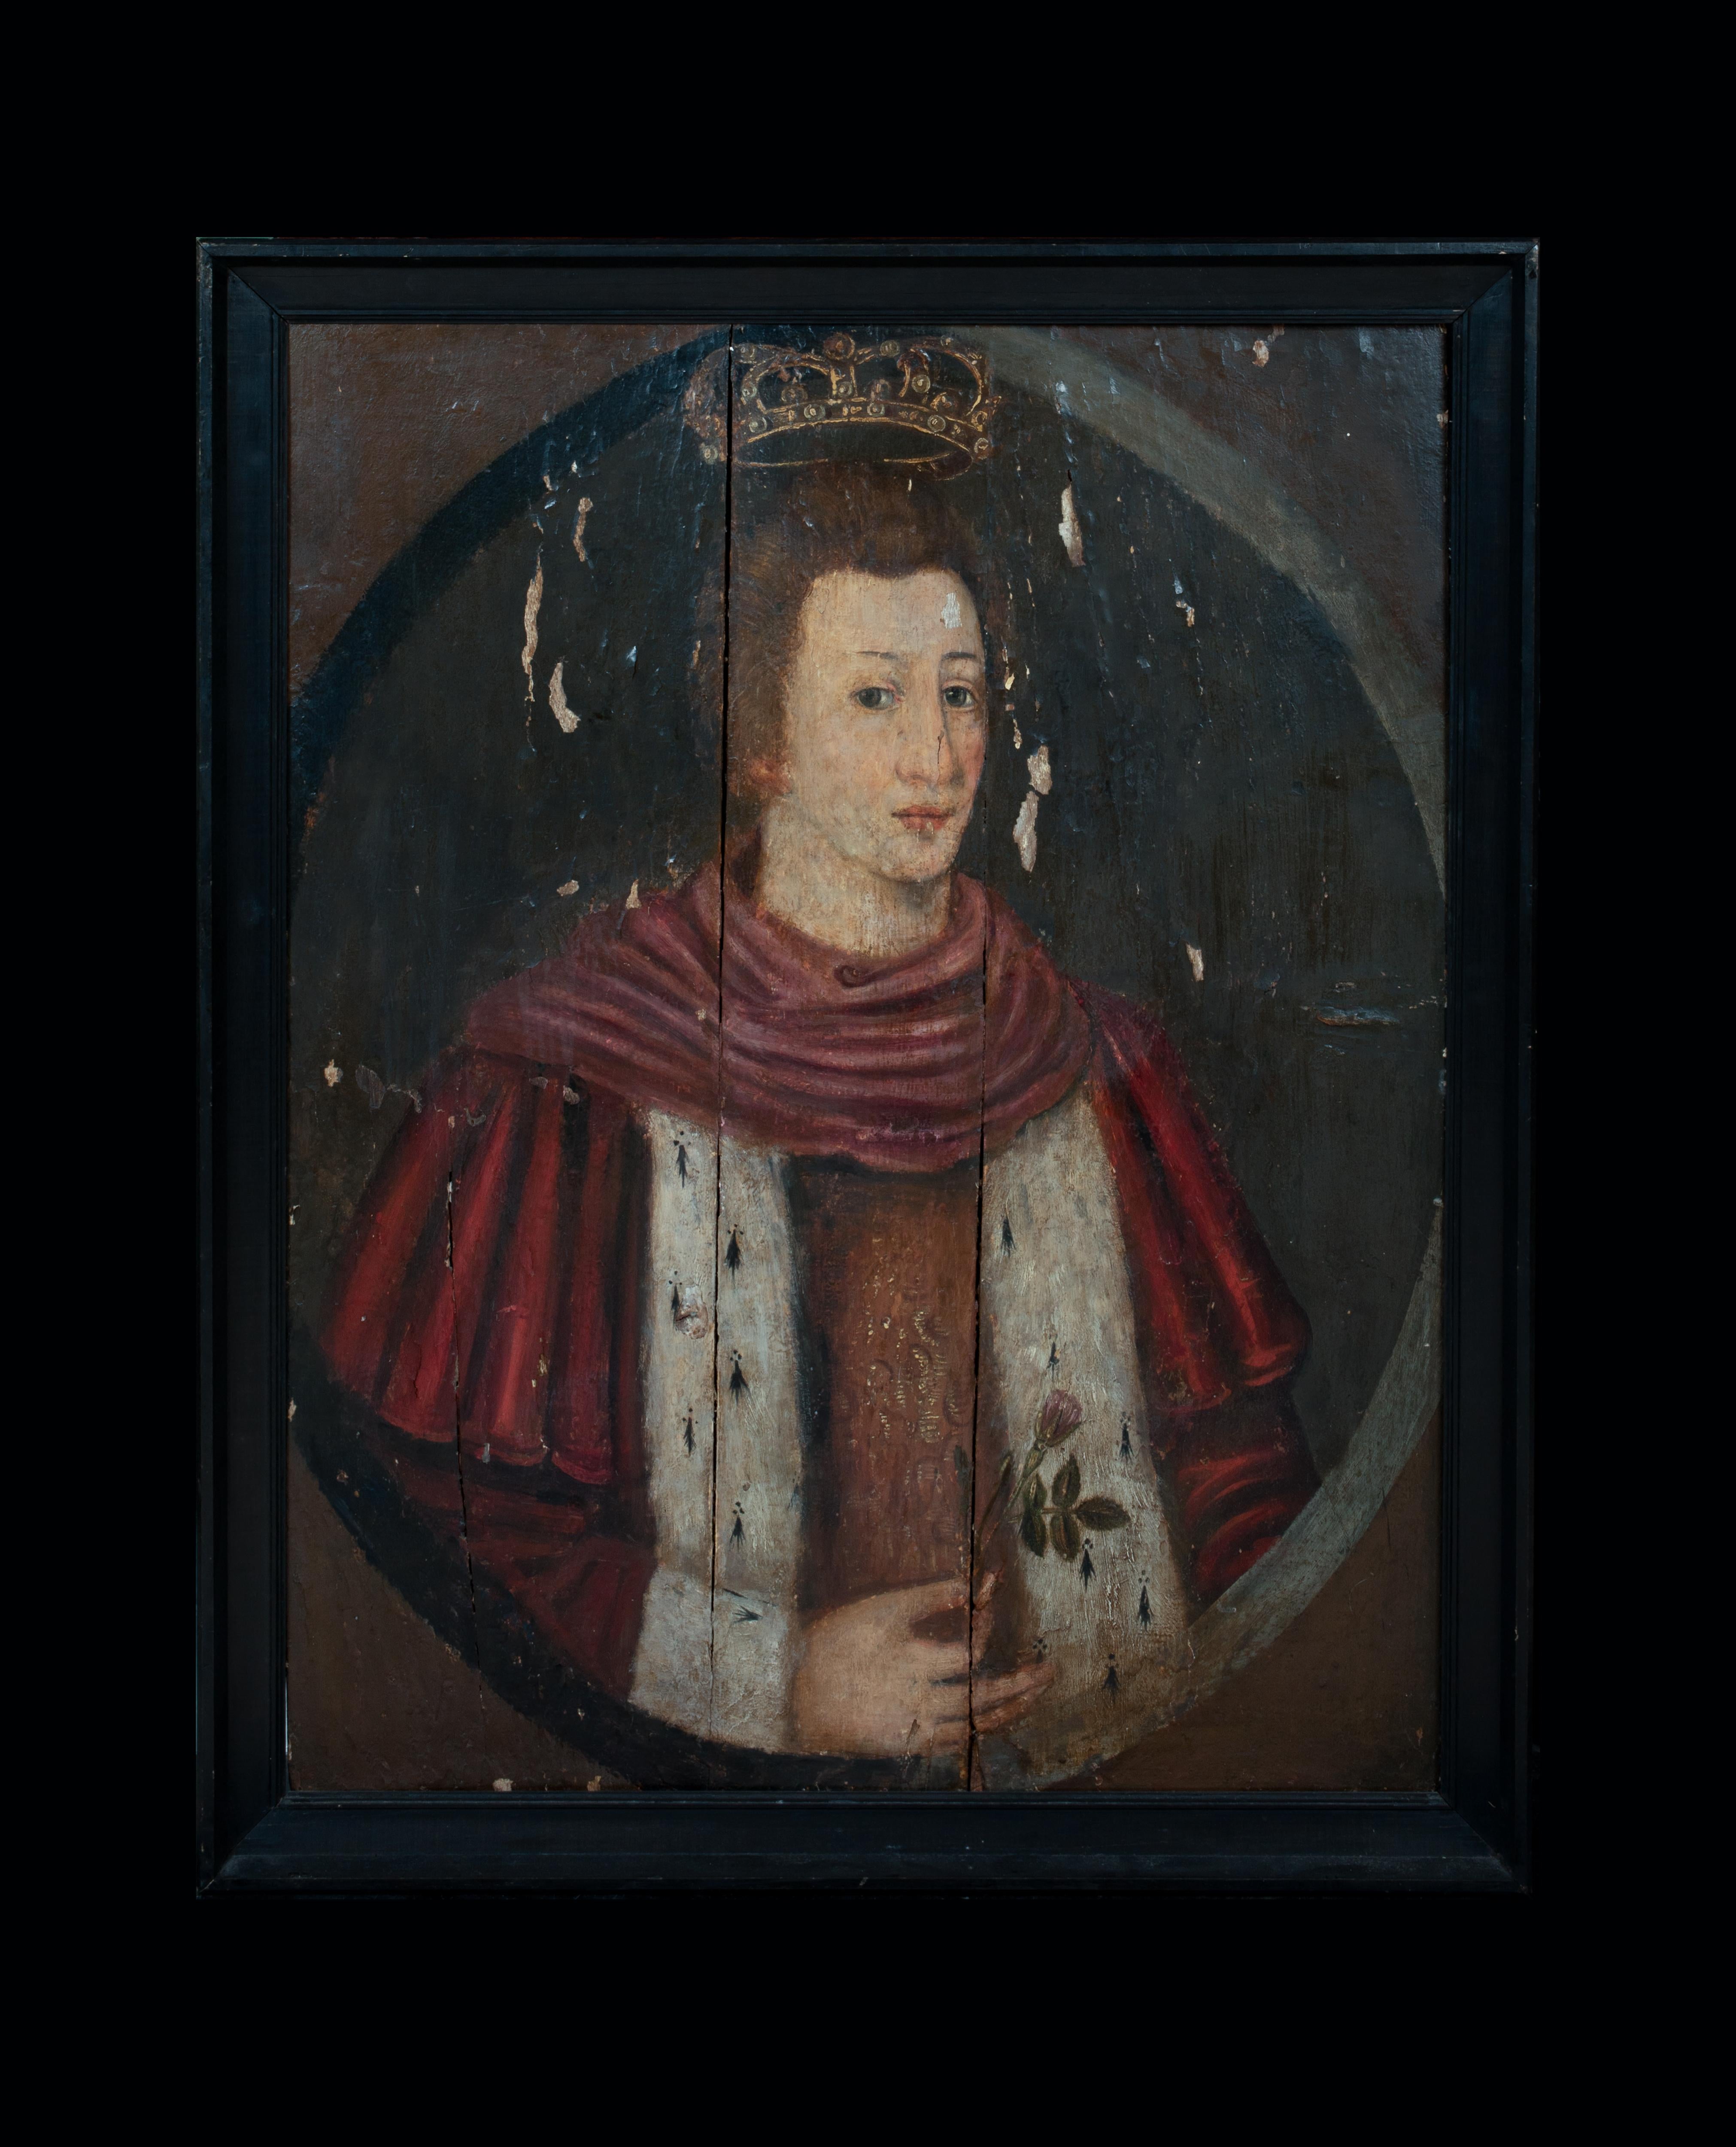 Porträt von König Edward VI (1537-1553) als Prinz von Wales, 16. Jahrhundert  – Painting von Unknown